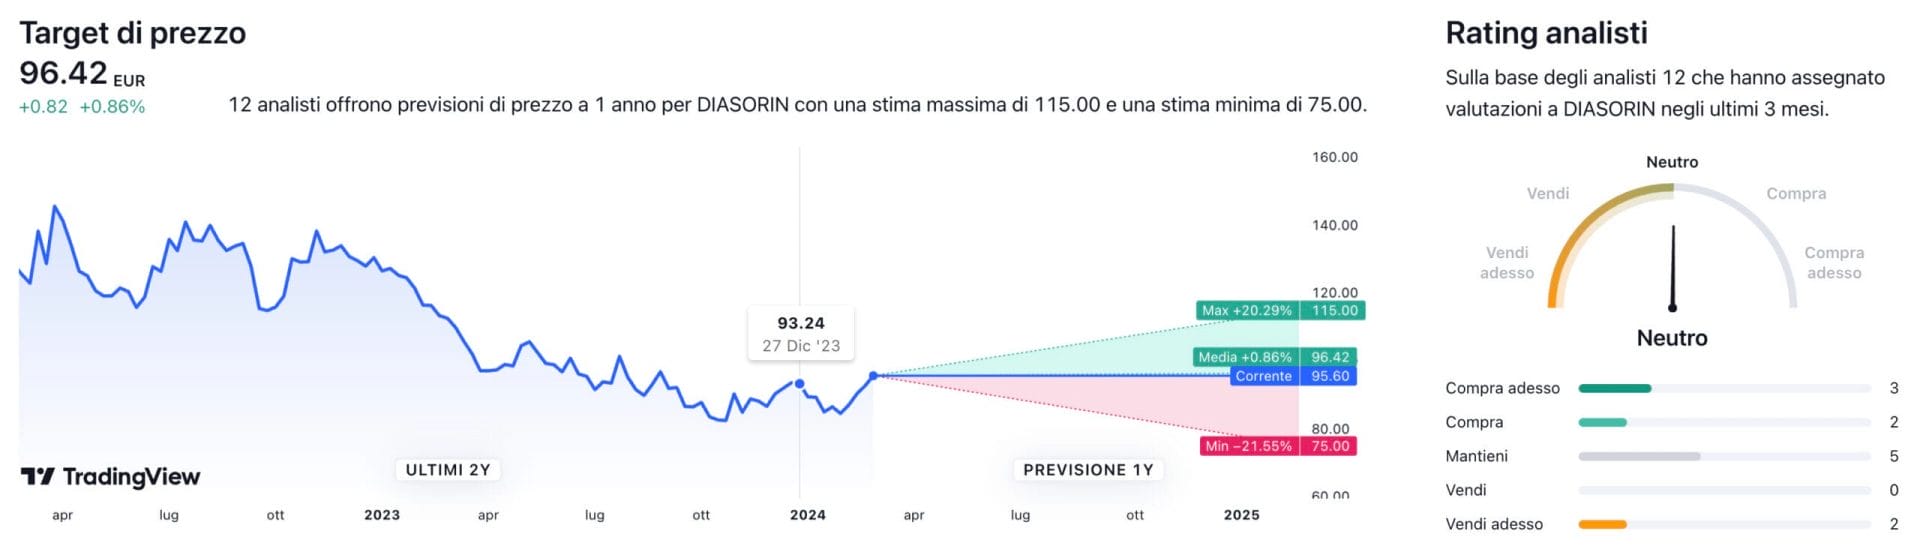 Target di prezzo a un anno e raccomandazioni degli analisti per il titolo Diasorin